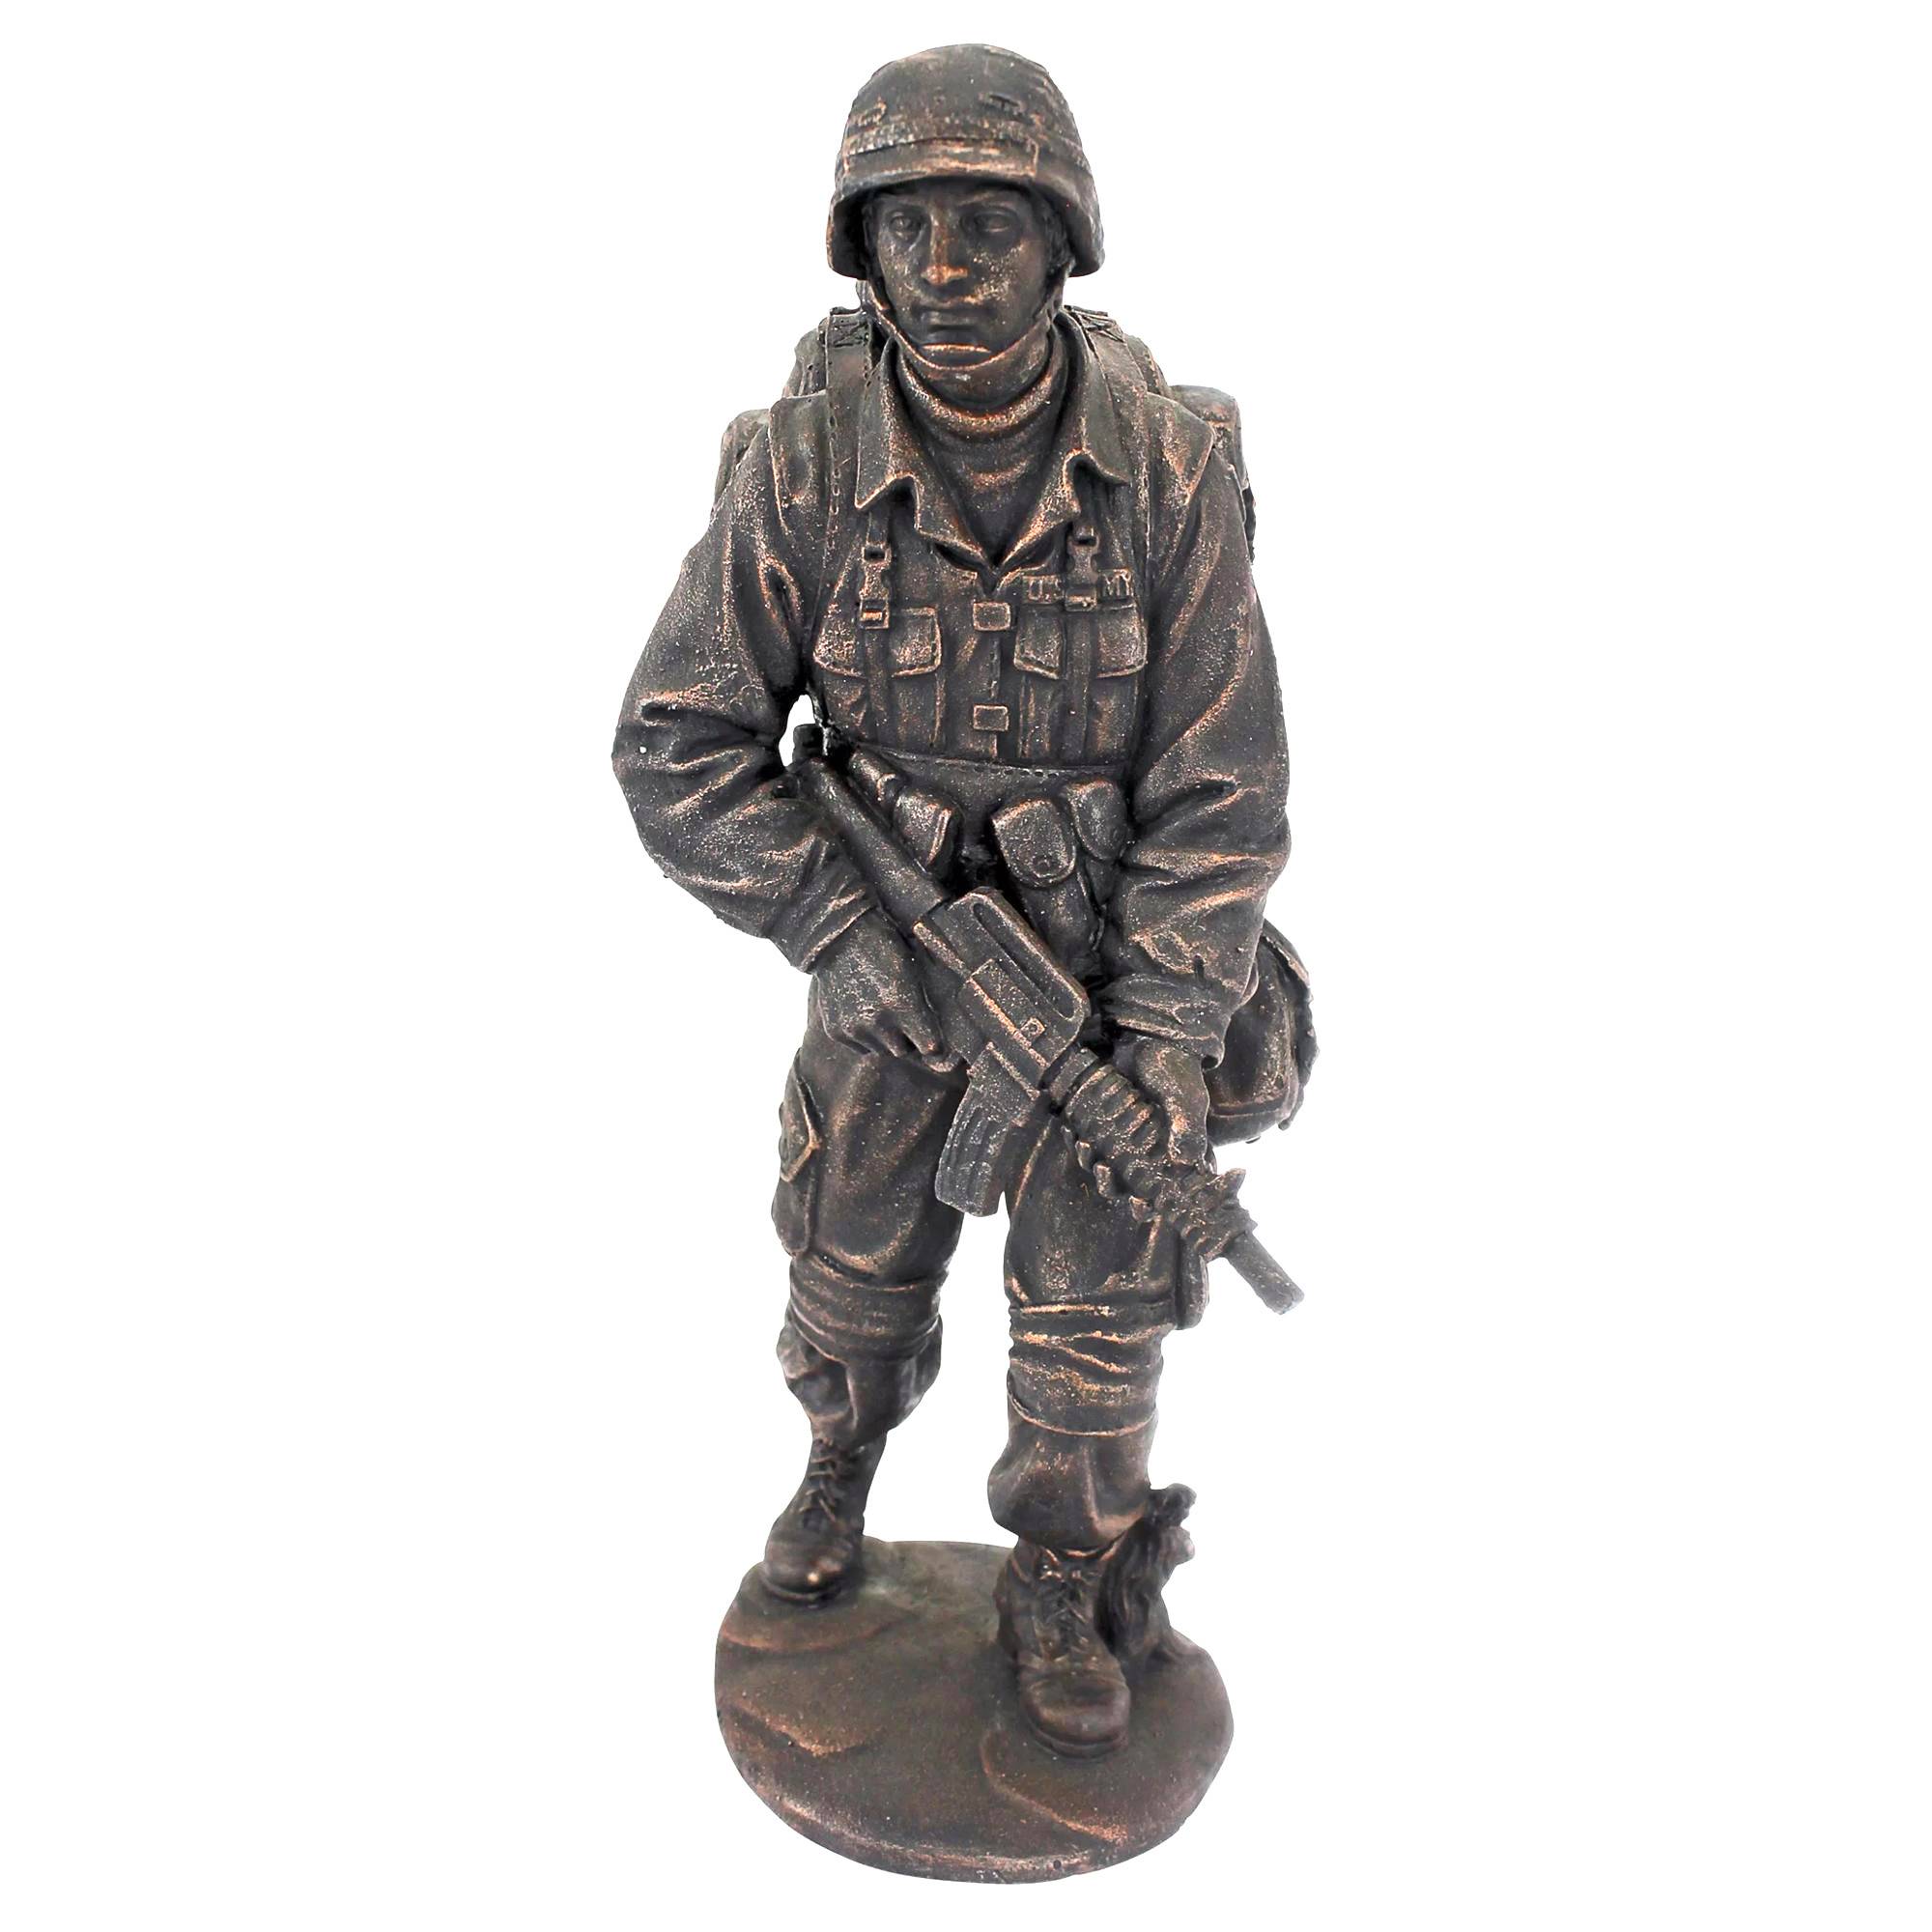 ديكور الحديقة صب النحت المعدني تمثال الجندي البرونزي بالحجم الطبيعي